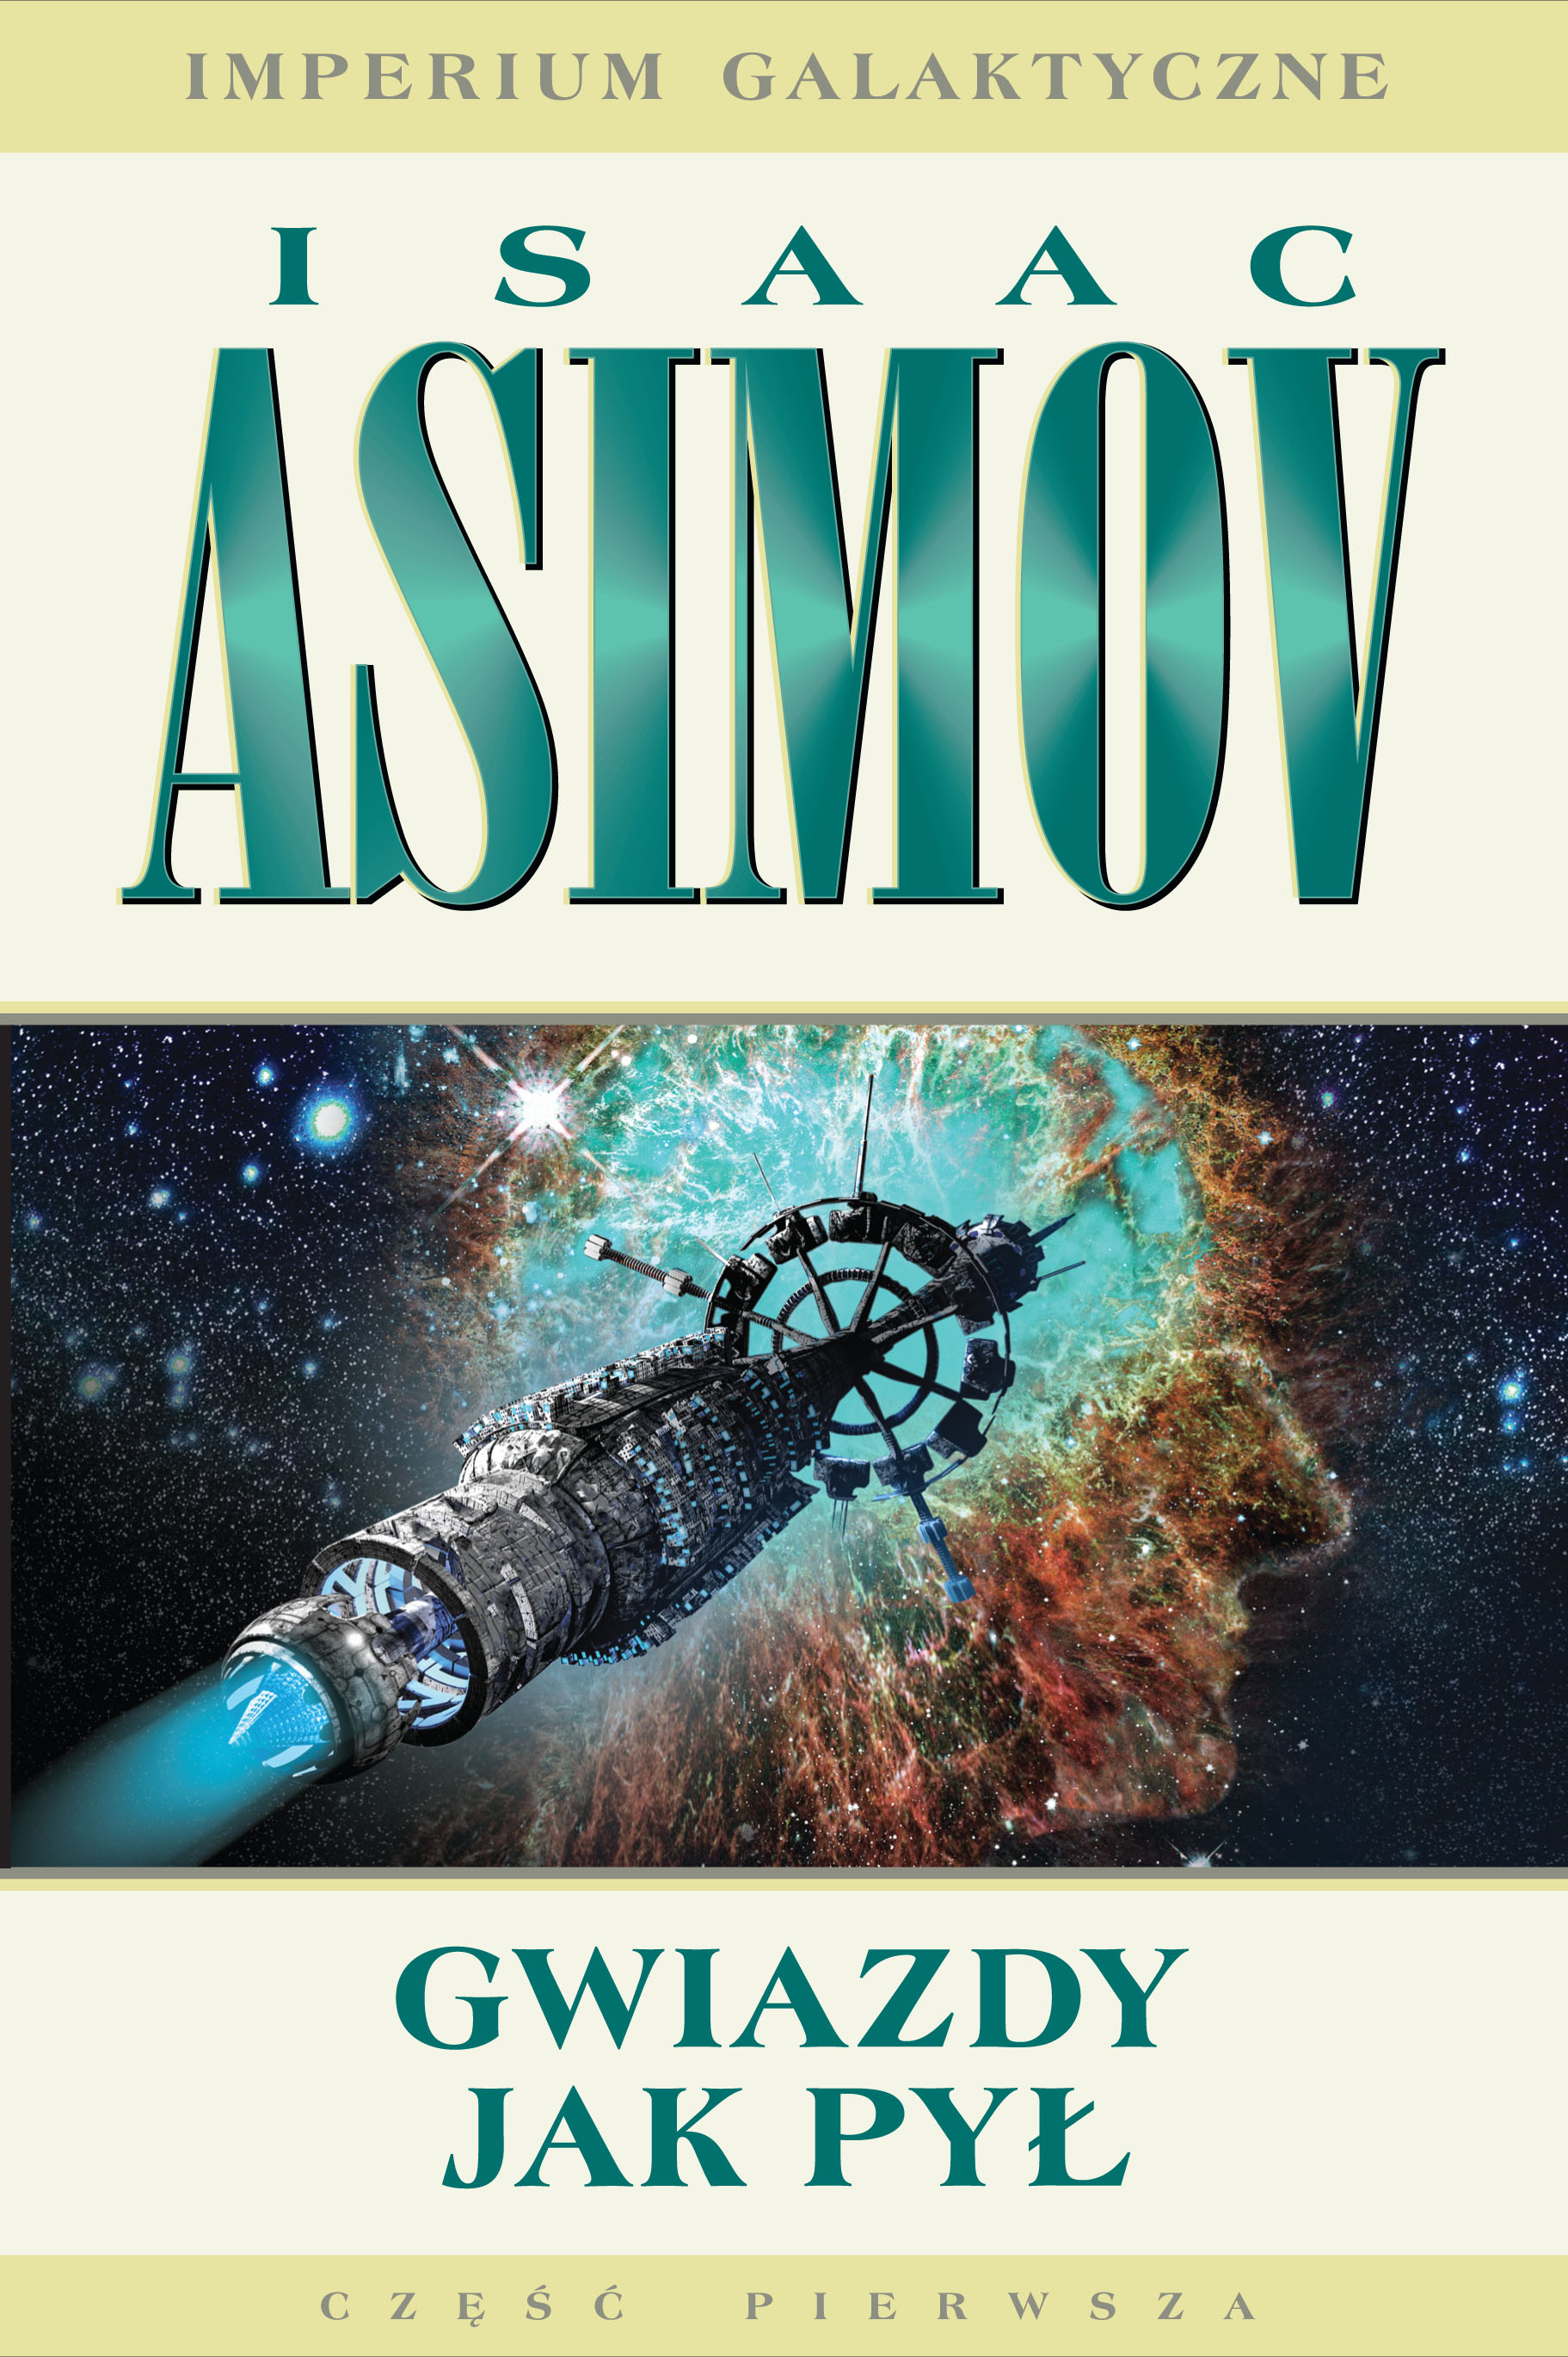 Isaac Asimov - "Gwiazdy jak pył" od 12 kwietnia w księgarniach!